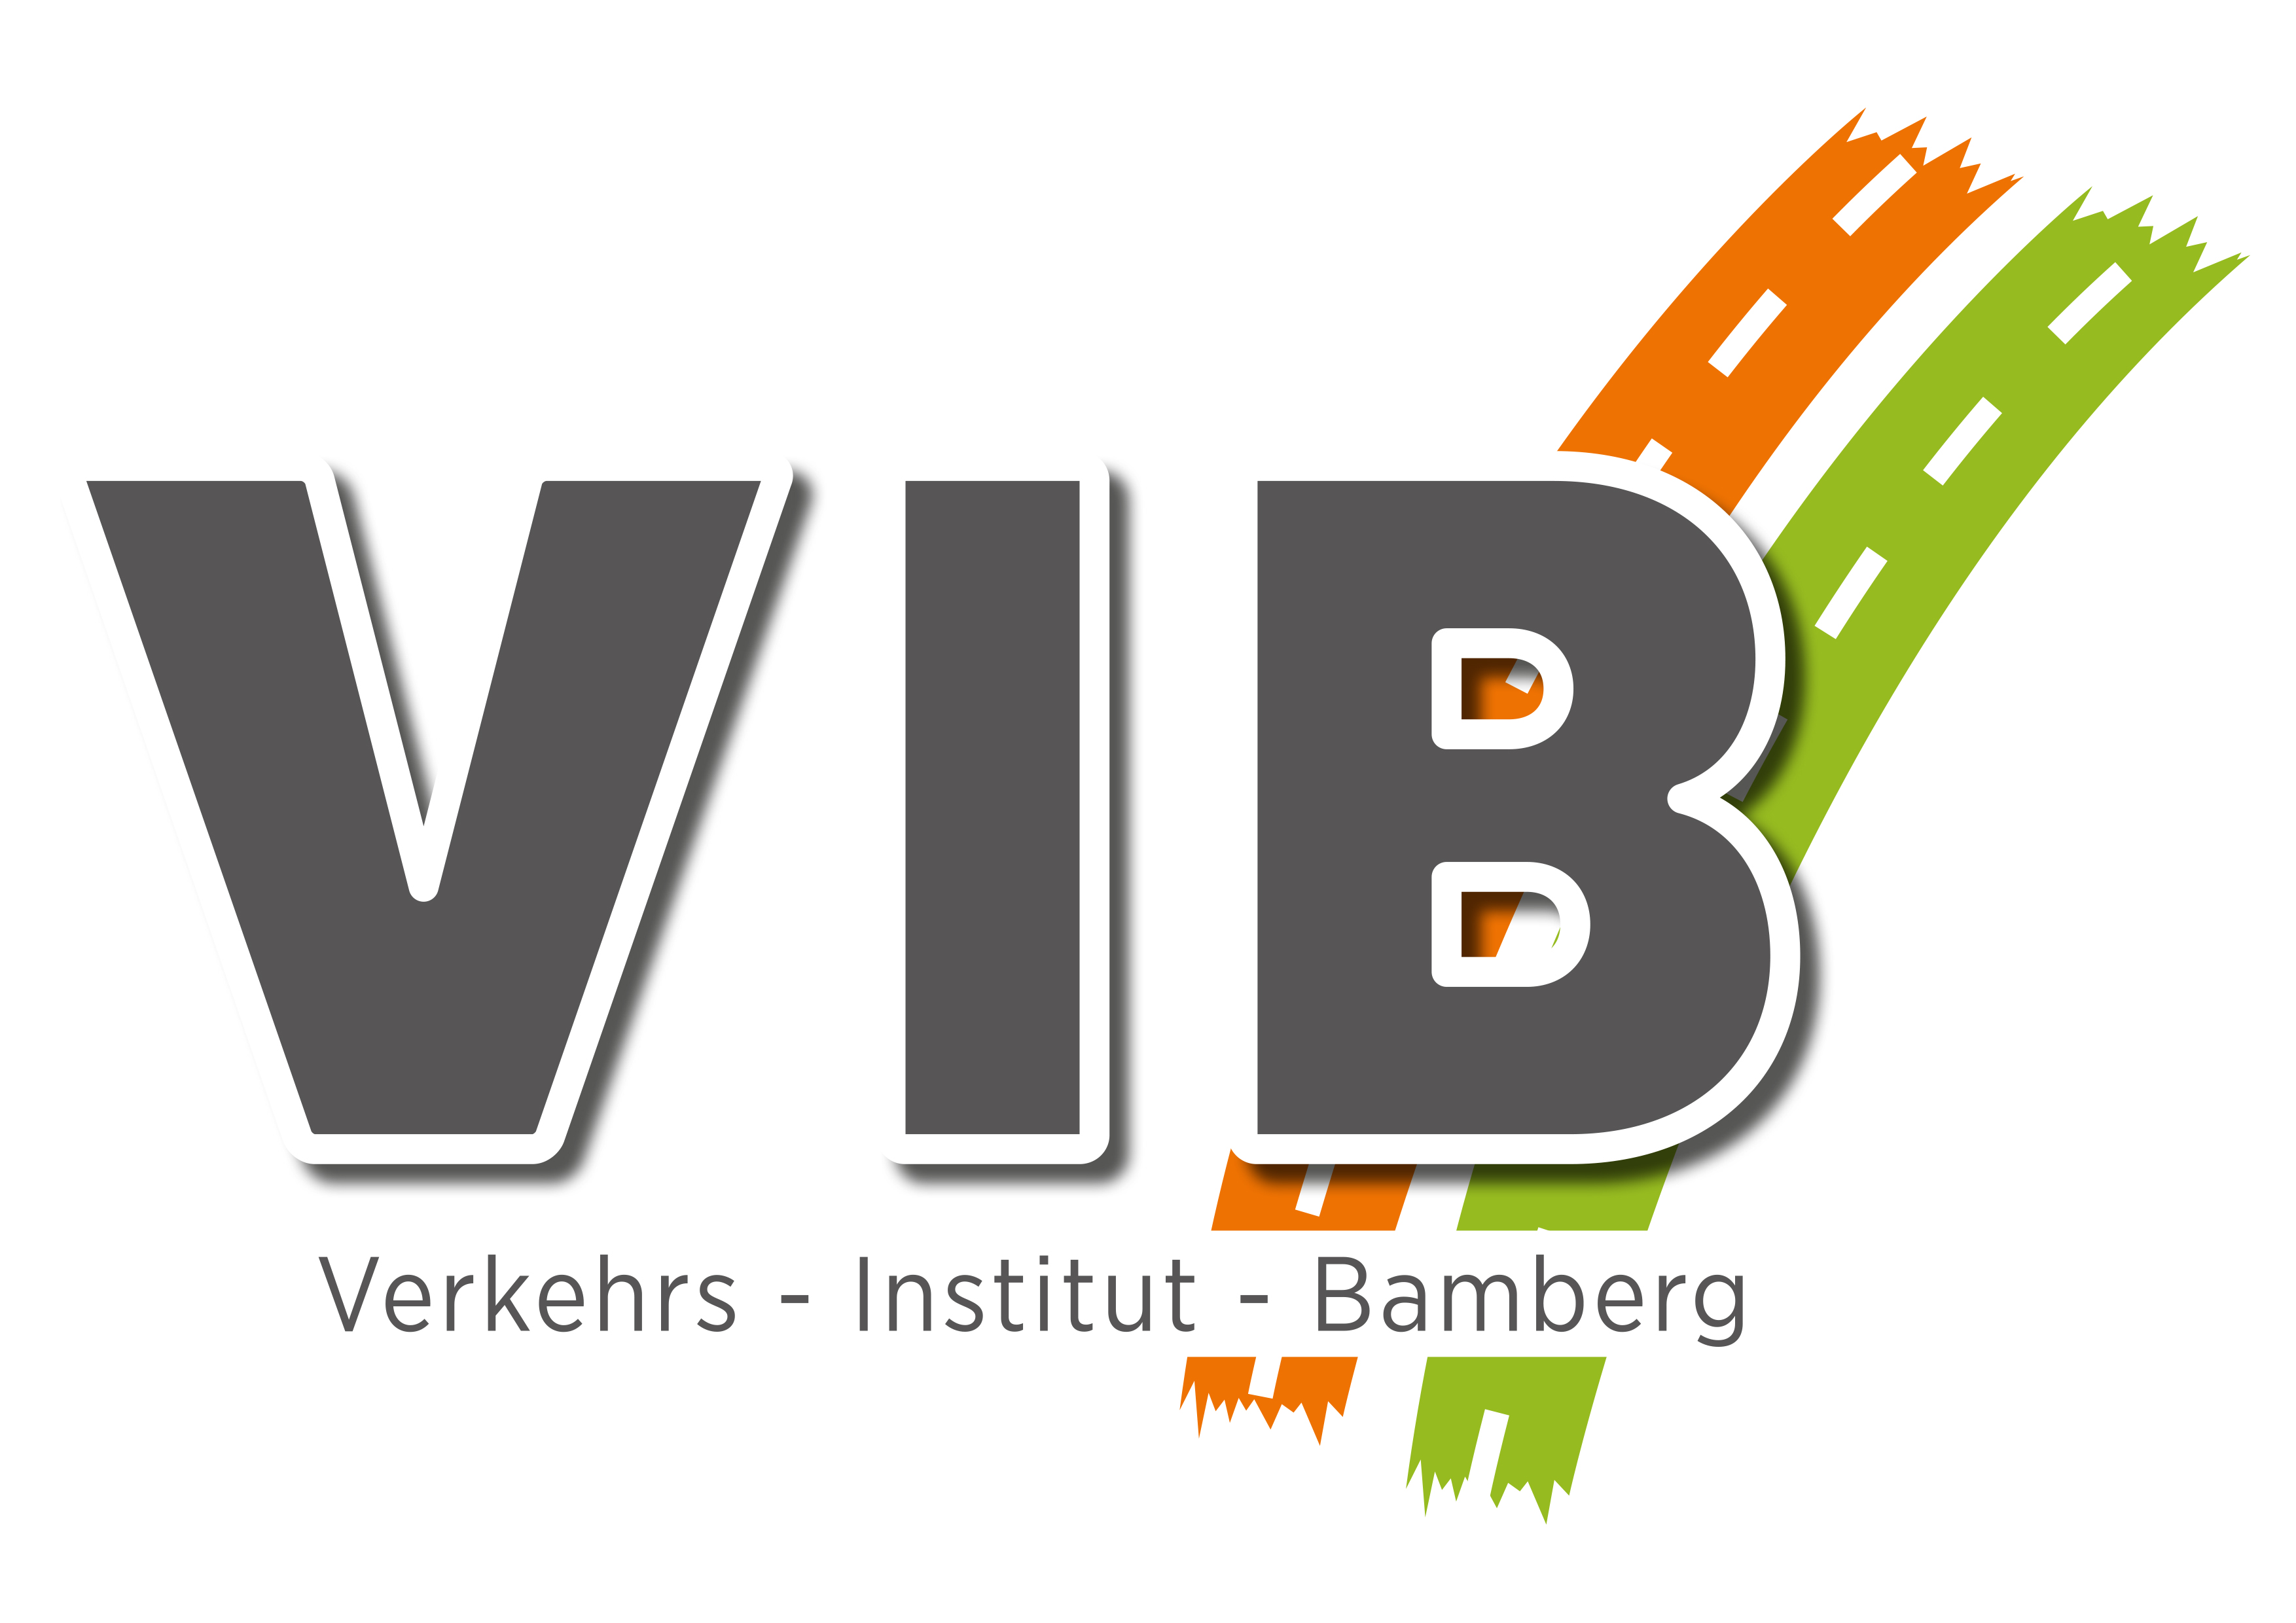 VIB Verkehrs-Institut-Bamberg